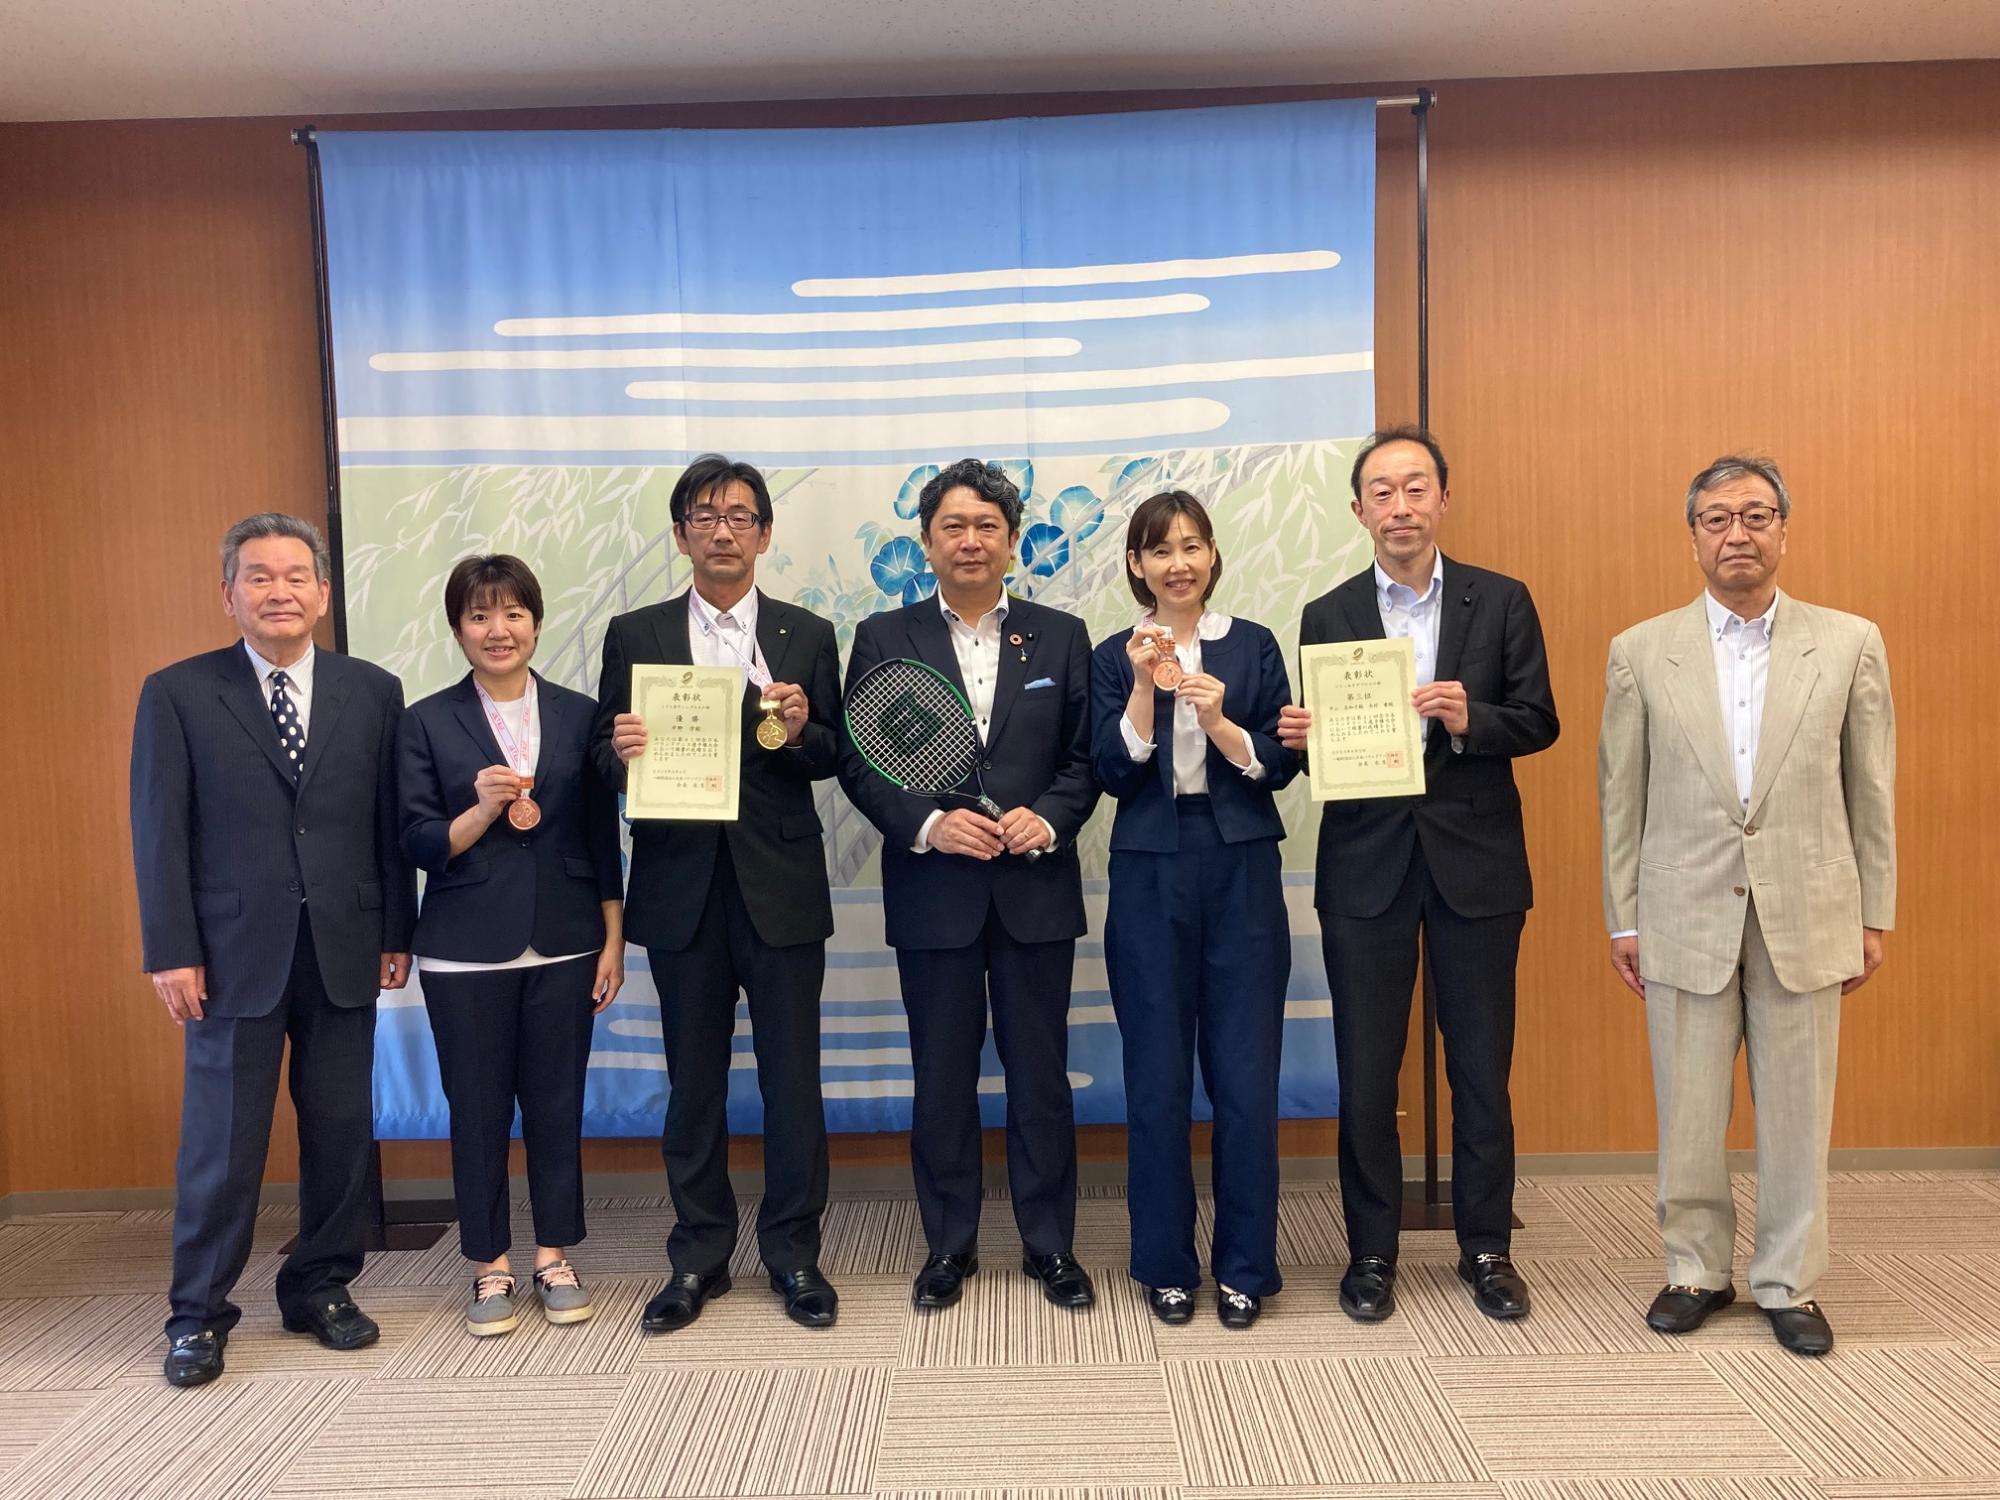 全日本バウンドテニス選手権大会で優勝、入賞された選手の皆さんと市長の様子